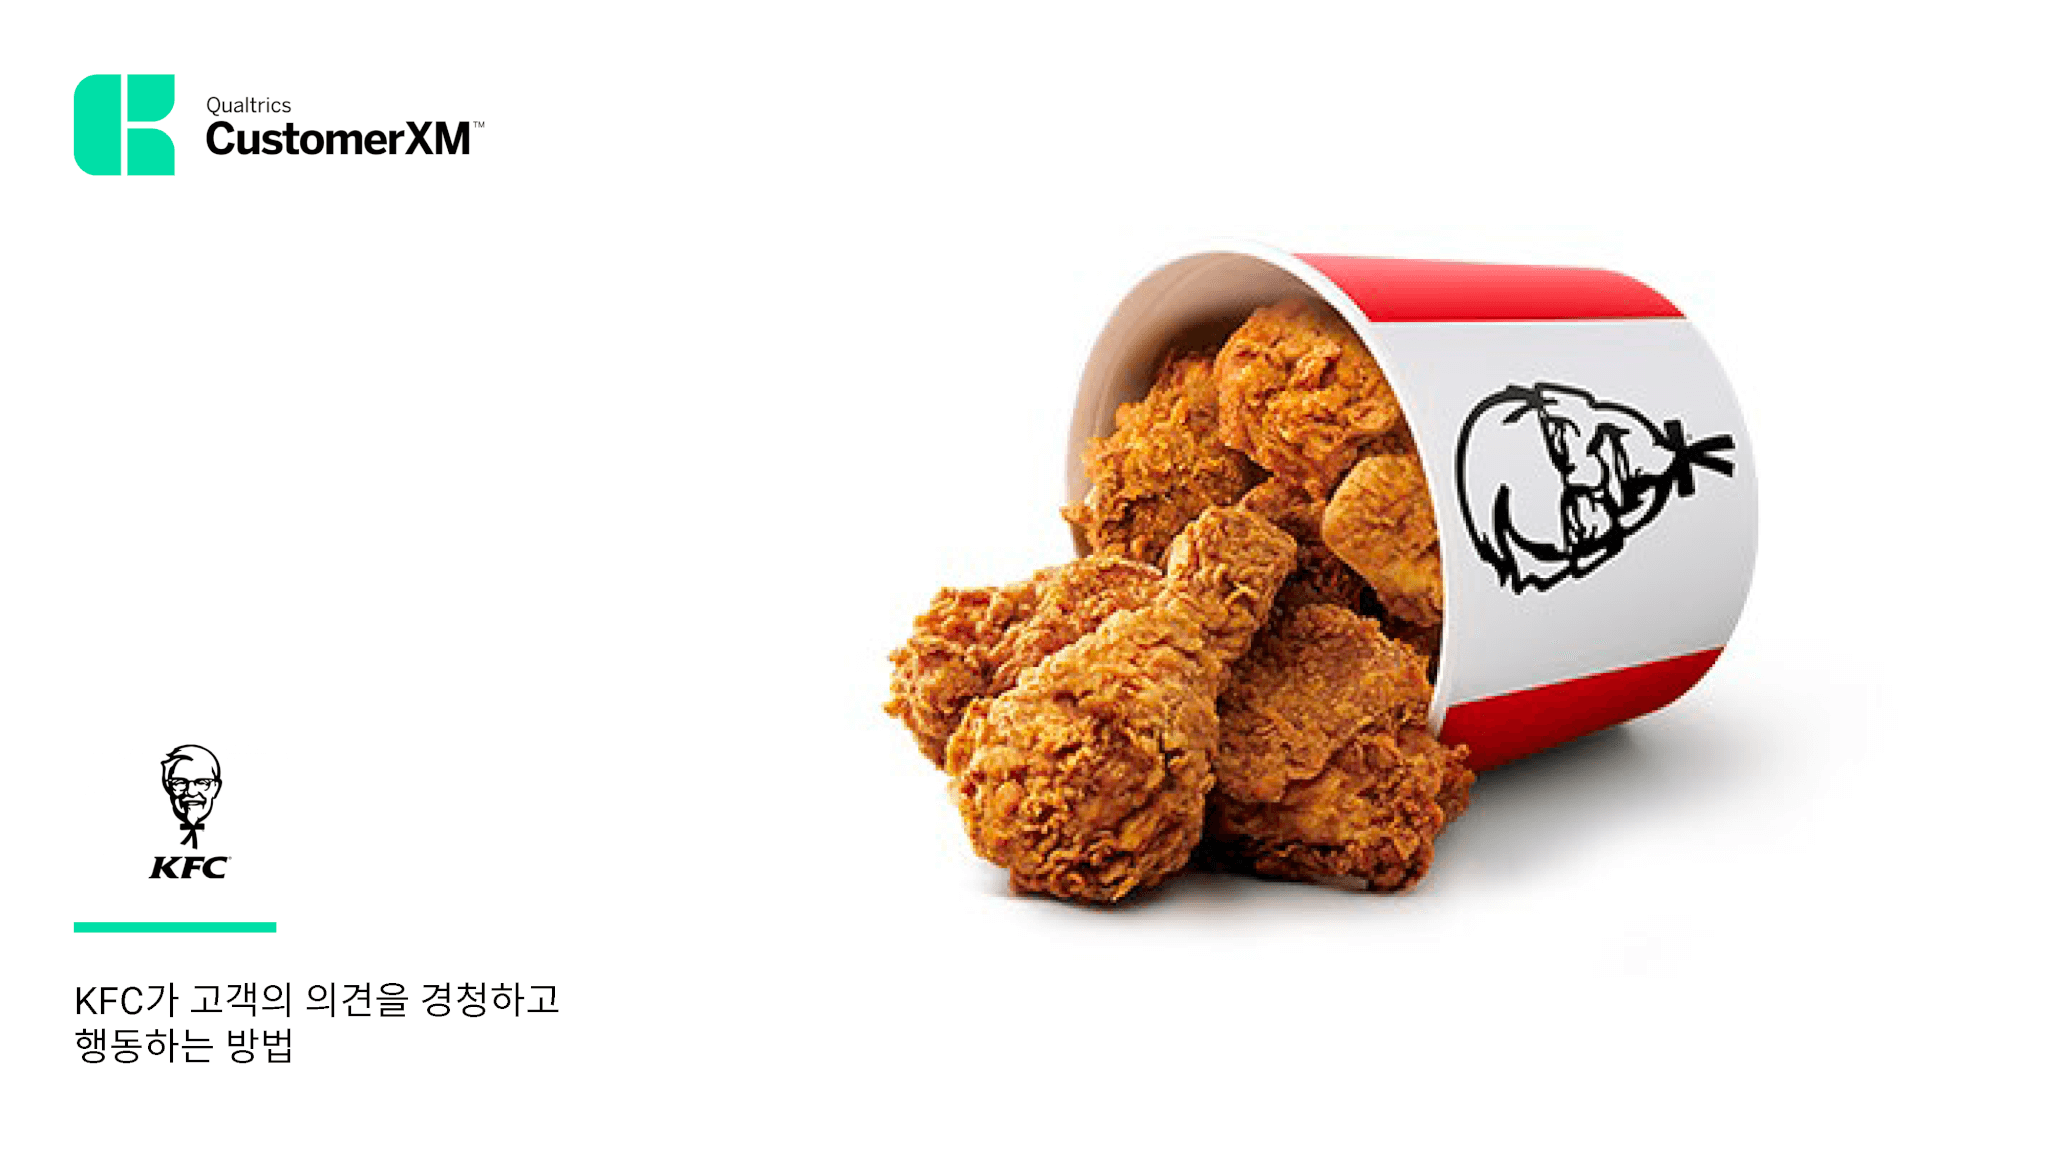 KFC Case